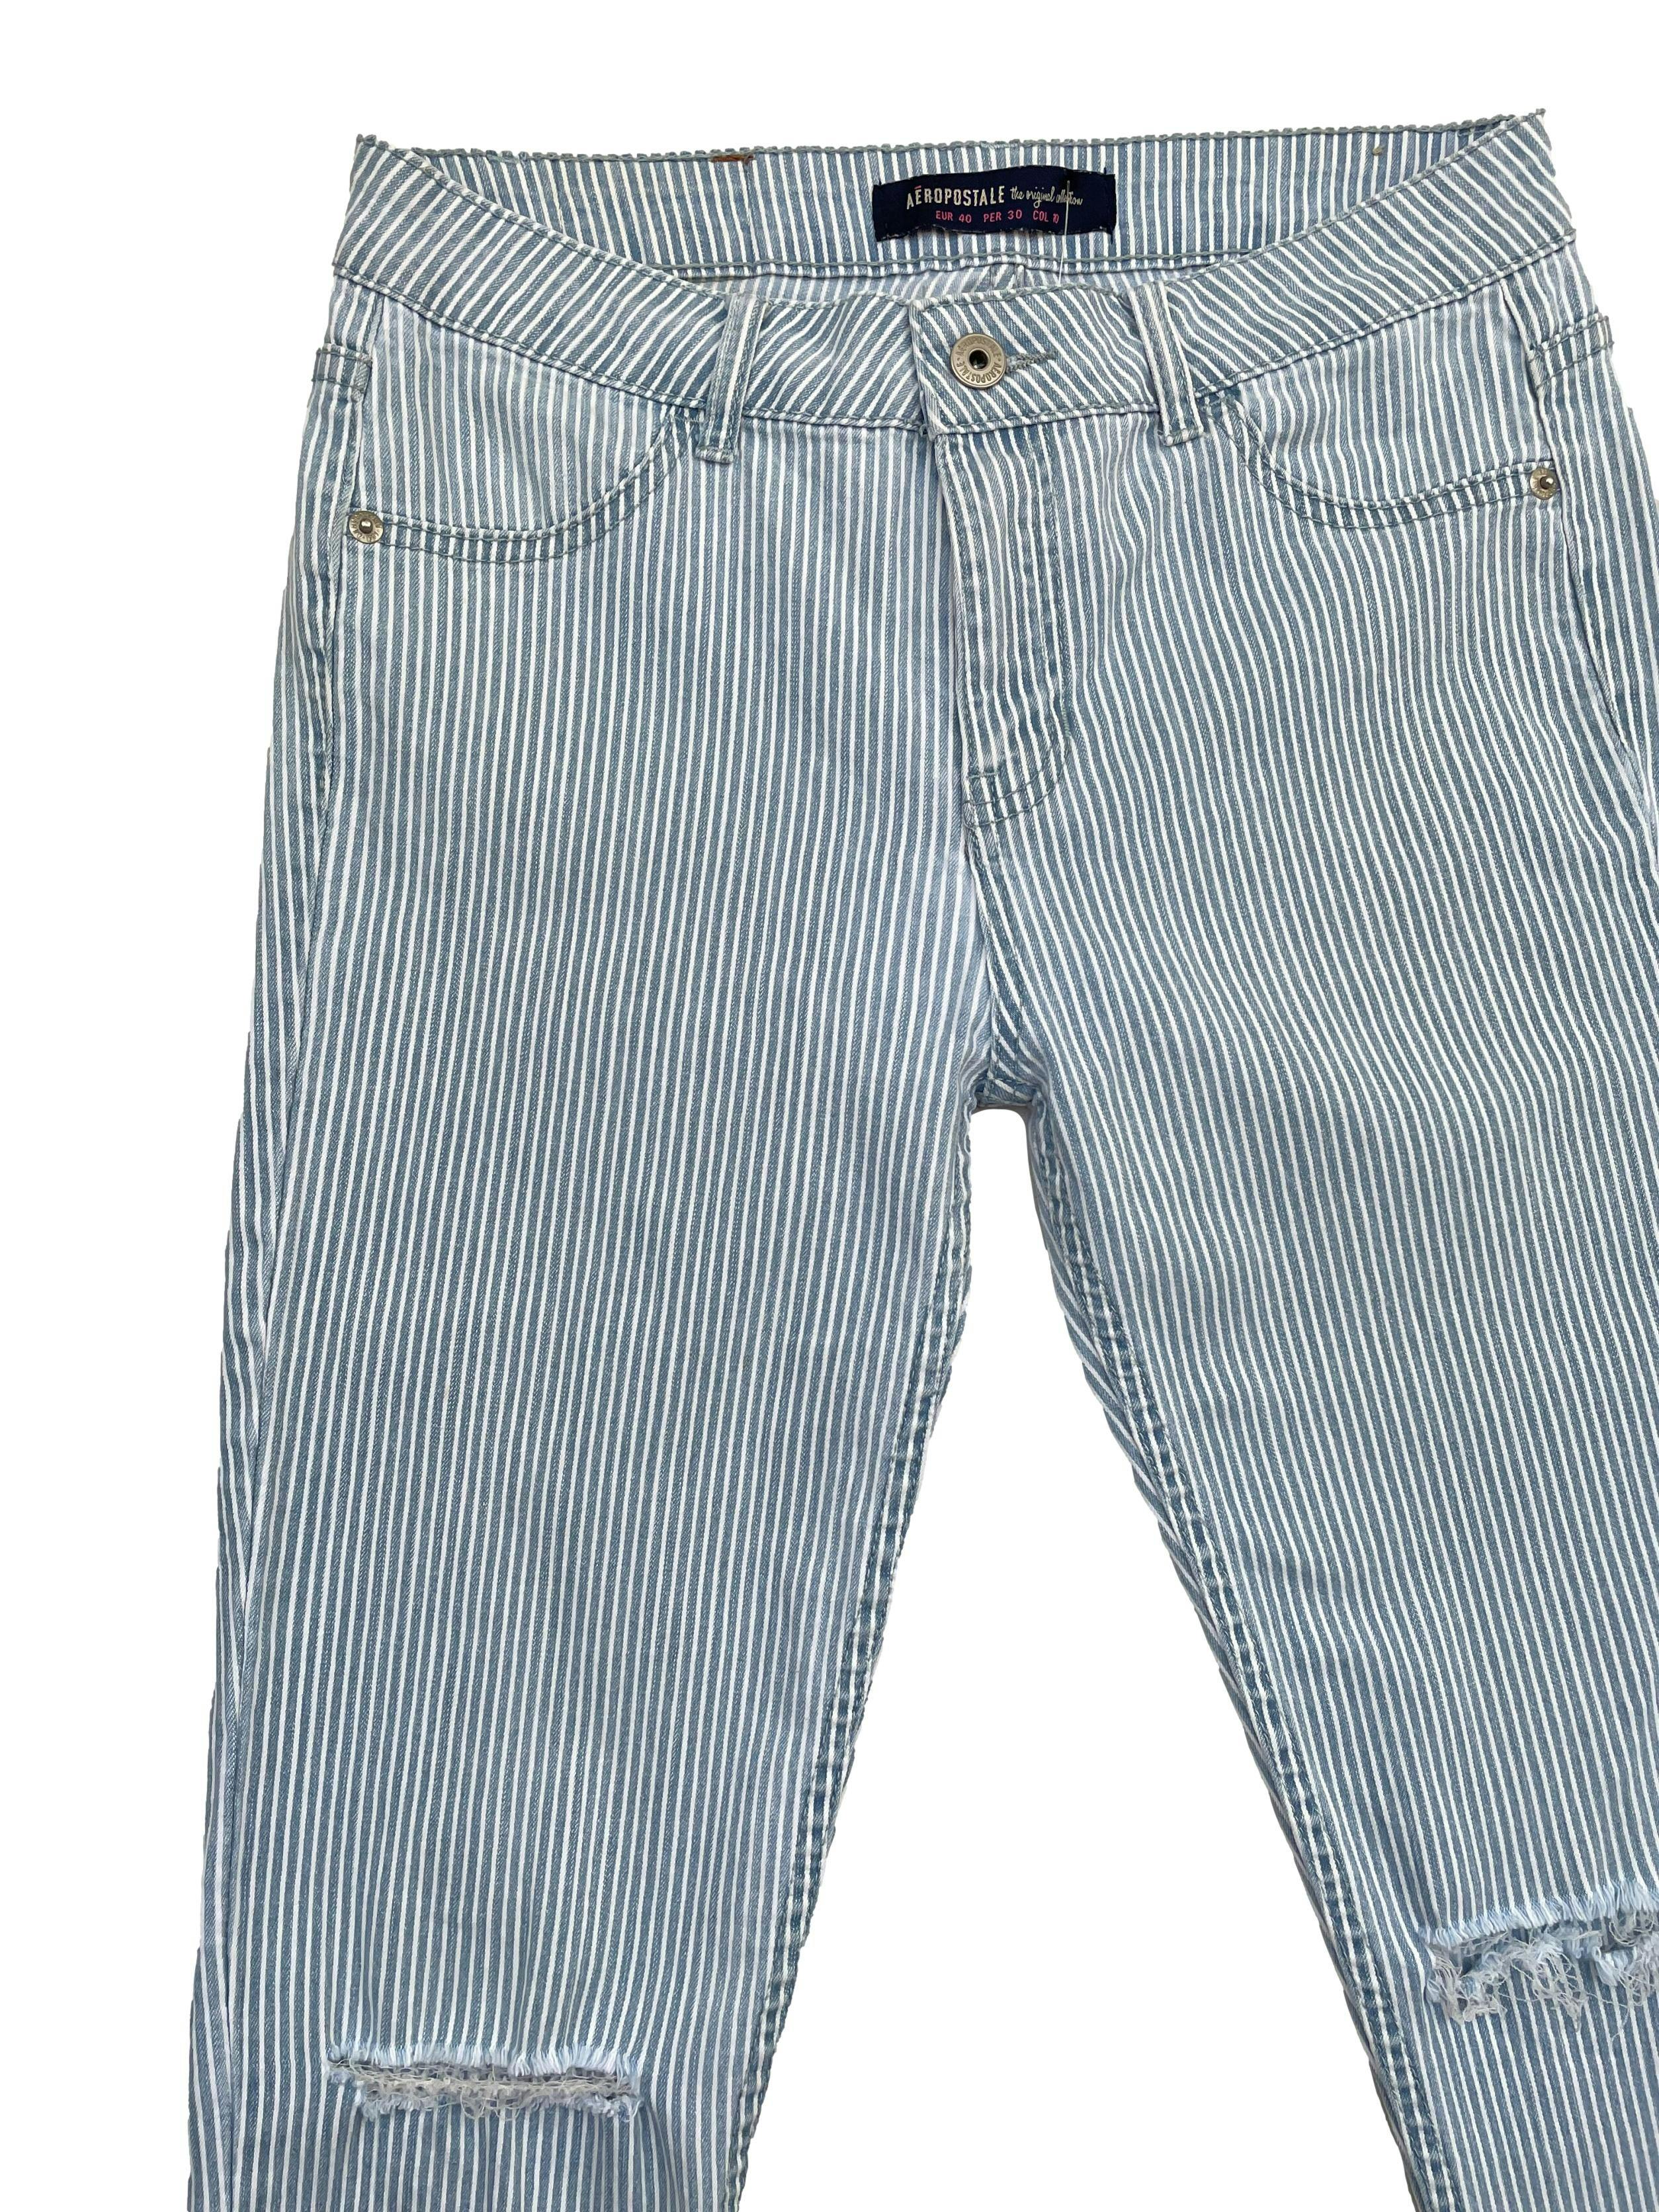 Skinny Jeans Aeropostale a rayas blancas y celestes, rasgado en las rodillas con bolsillos traseros. Cintura: 75cm, Largo: 92cm, Tiro: 24cm. Talla: 30